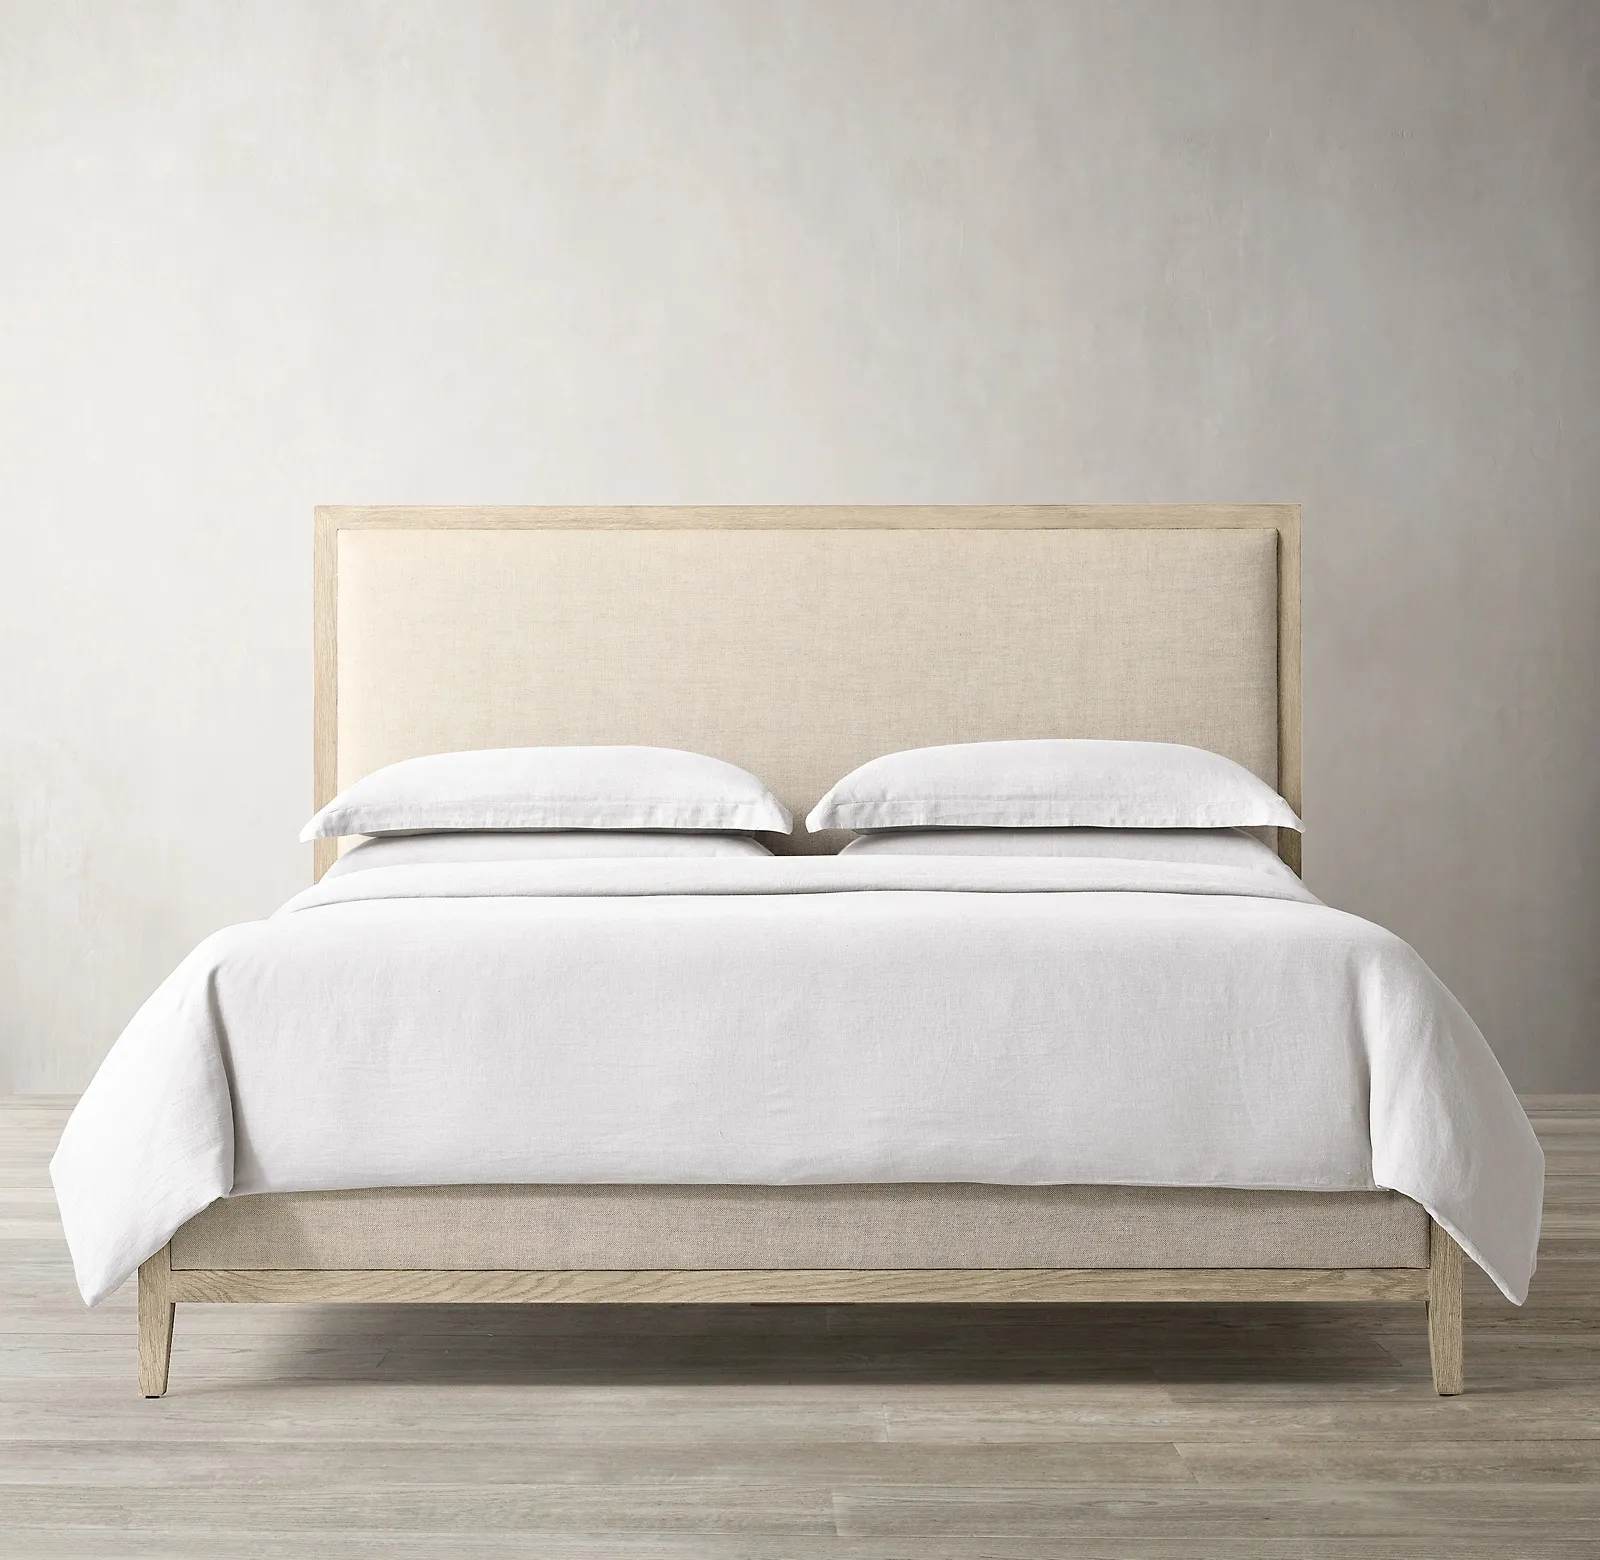 Encuentre el mejor fabricante de vendo cama queen vendo cama queen para el mercado hablantes de spanish en alibaba.com